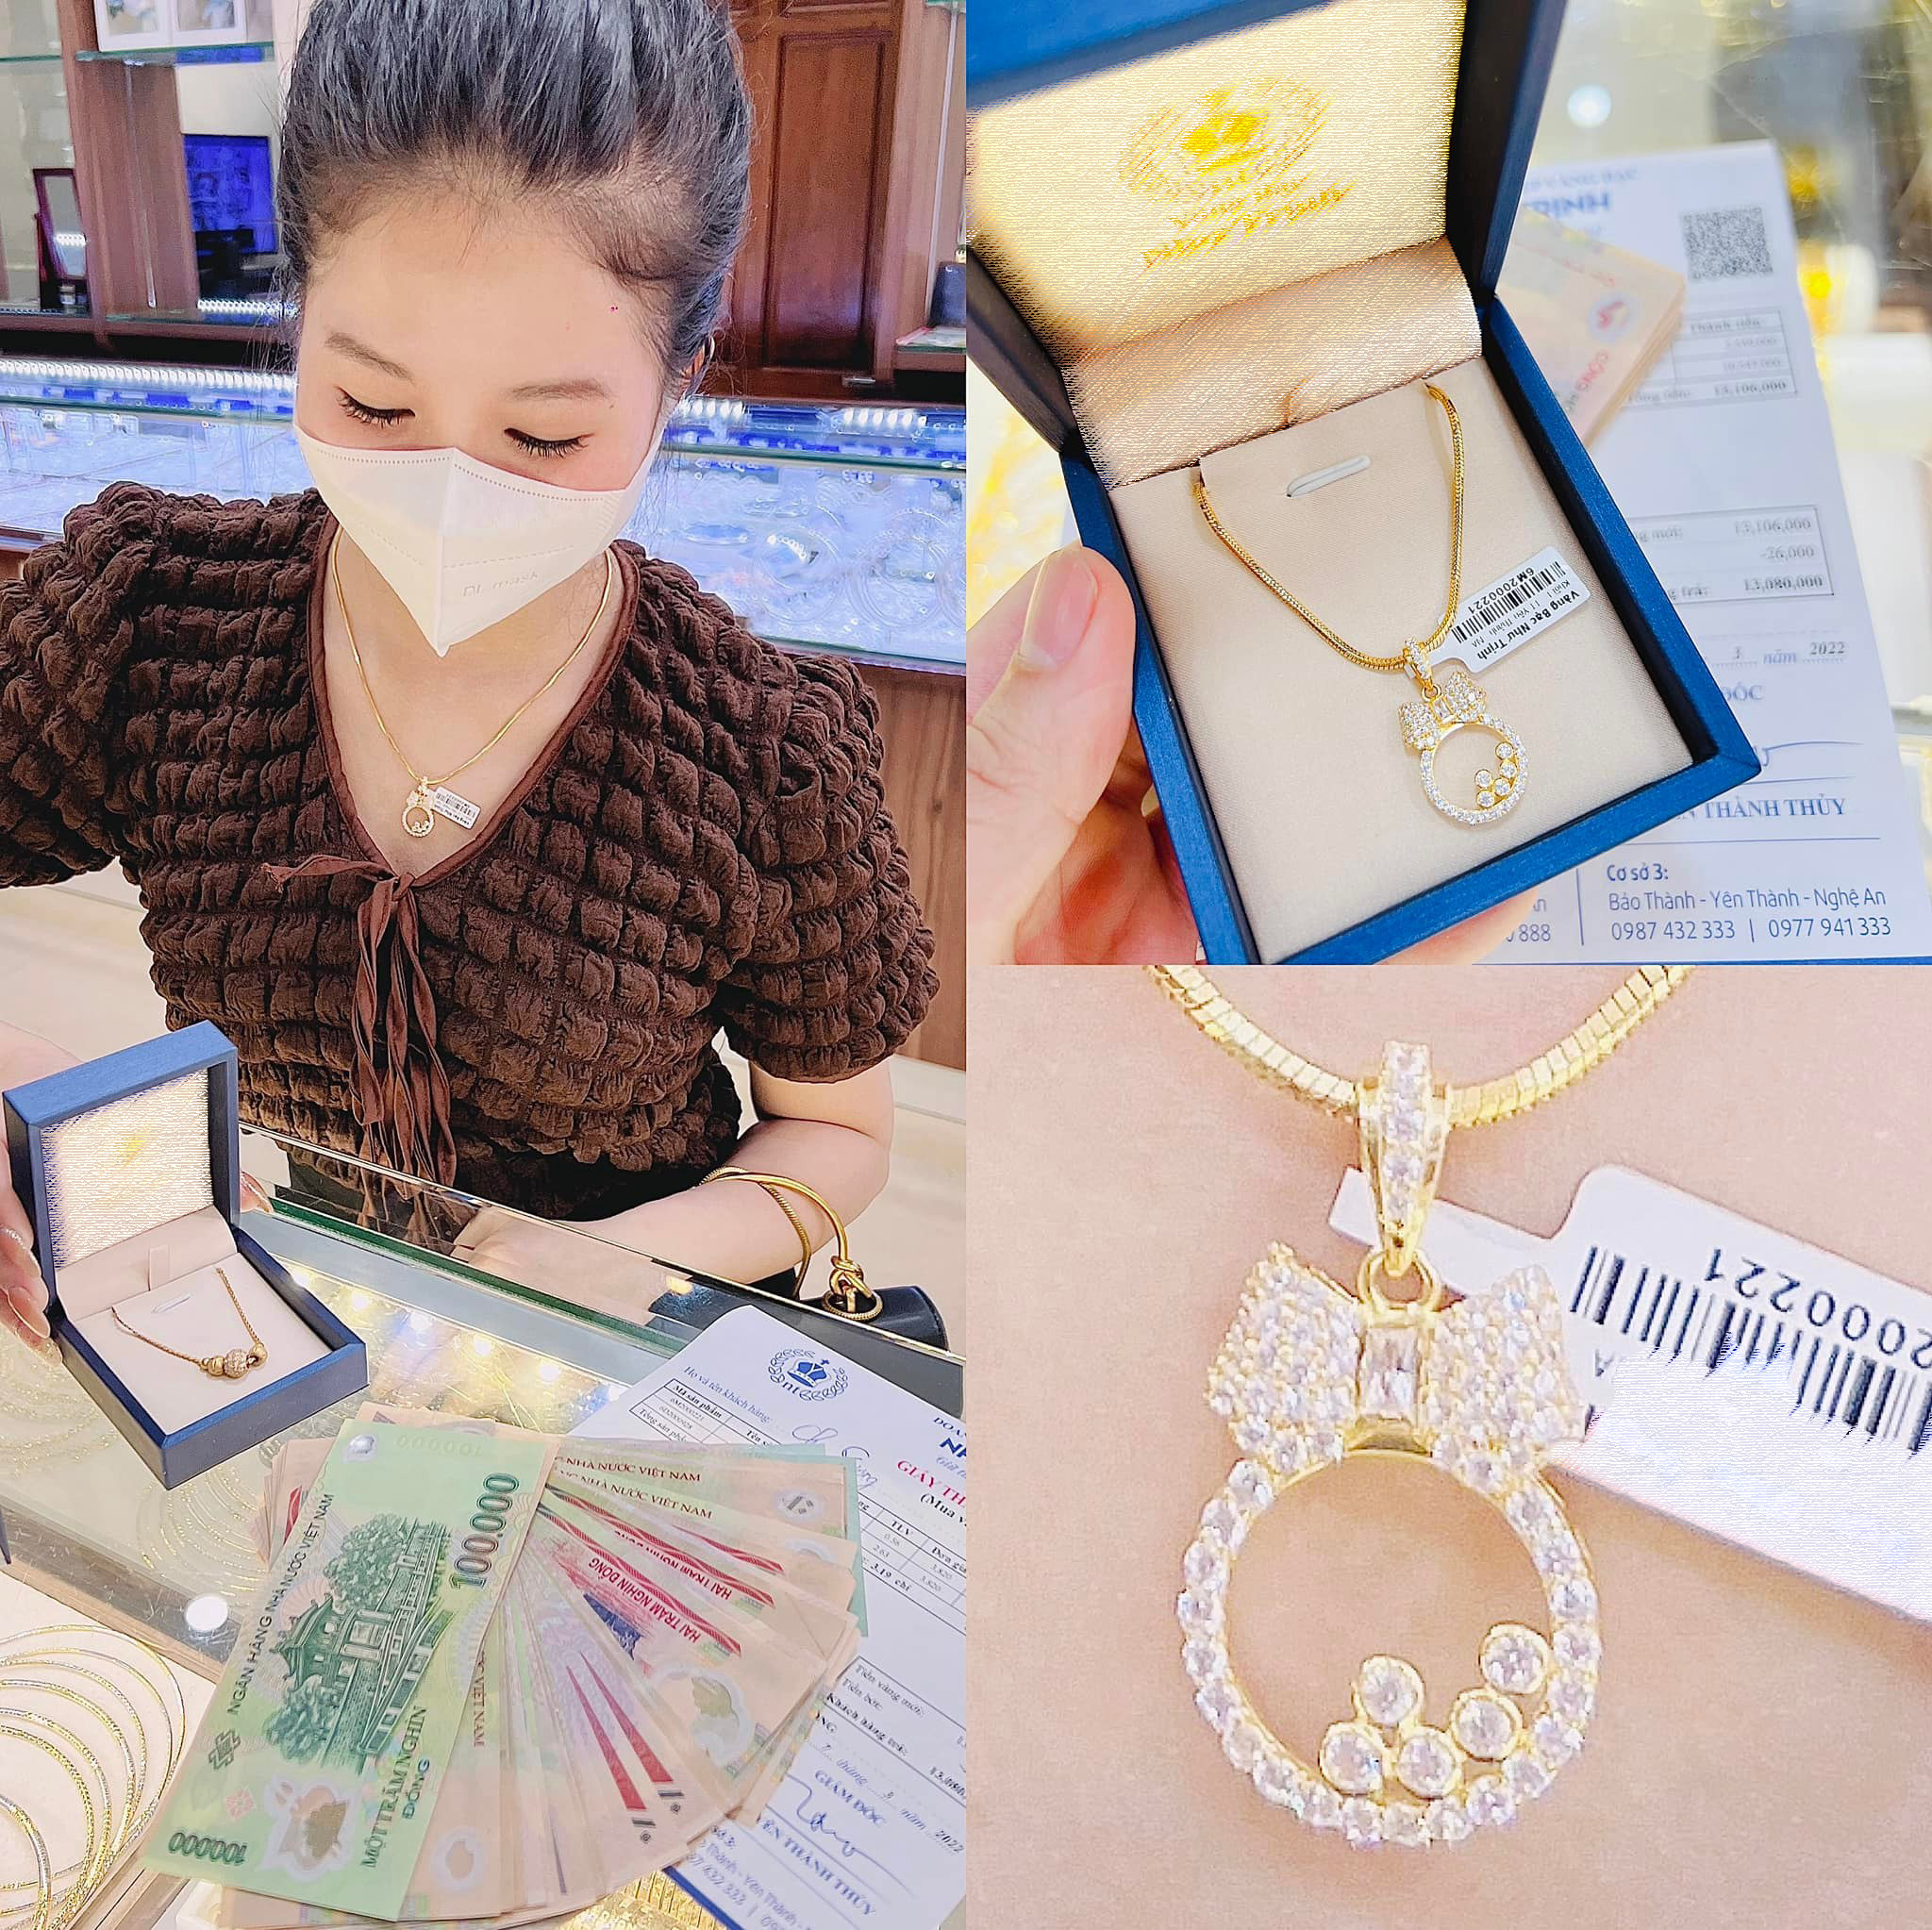 Trong sáng 8/3, ở nhiều tiệm vàng, các quầy bán khá sôi động khi nhiều người mua trang sức làm quà tặng ngày Quốc tế Phụ nữ. Ảnh: Thanh Phúc